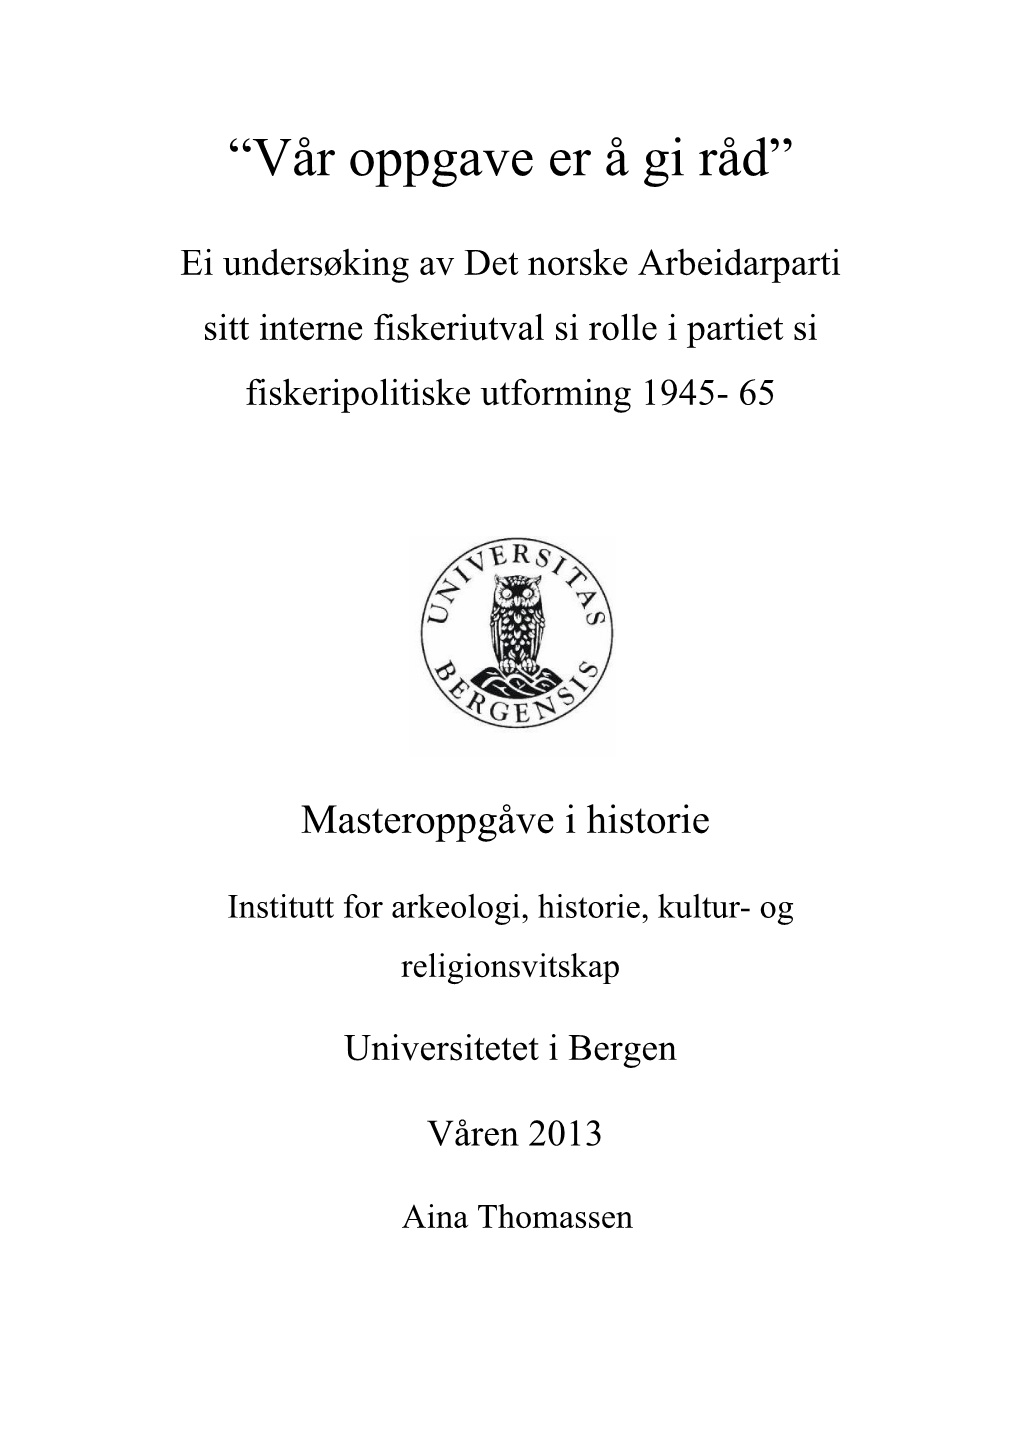 Master Thesis Aina Thomassen.Pdf (594.7Kb)